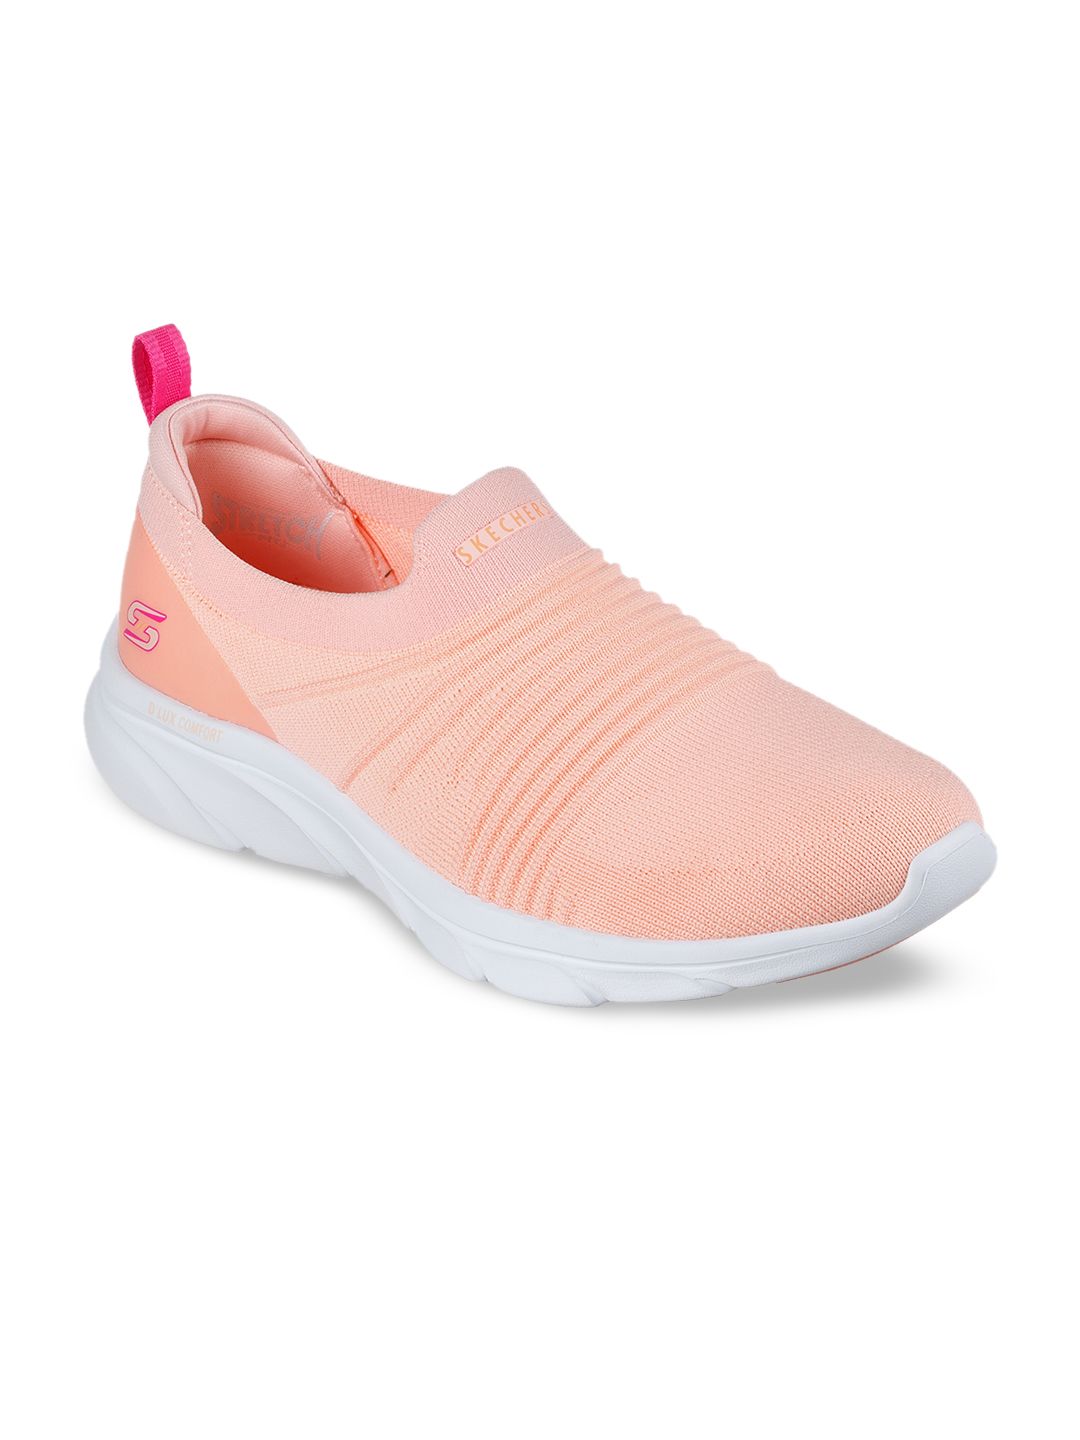 Skechers Women Pink Printed Slip-On Sneakers Price in India